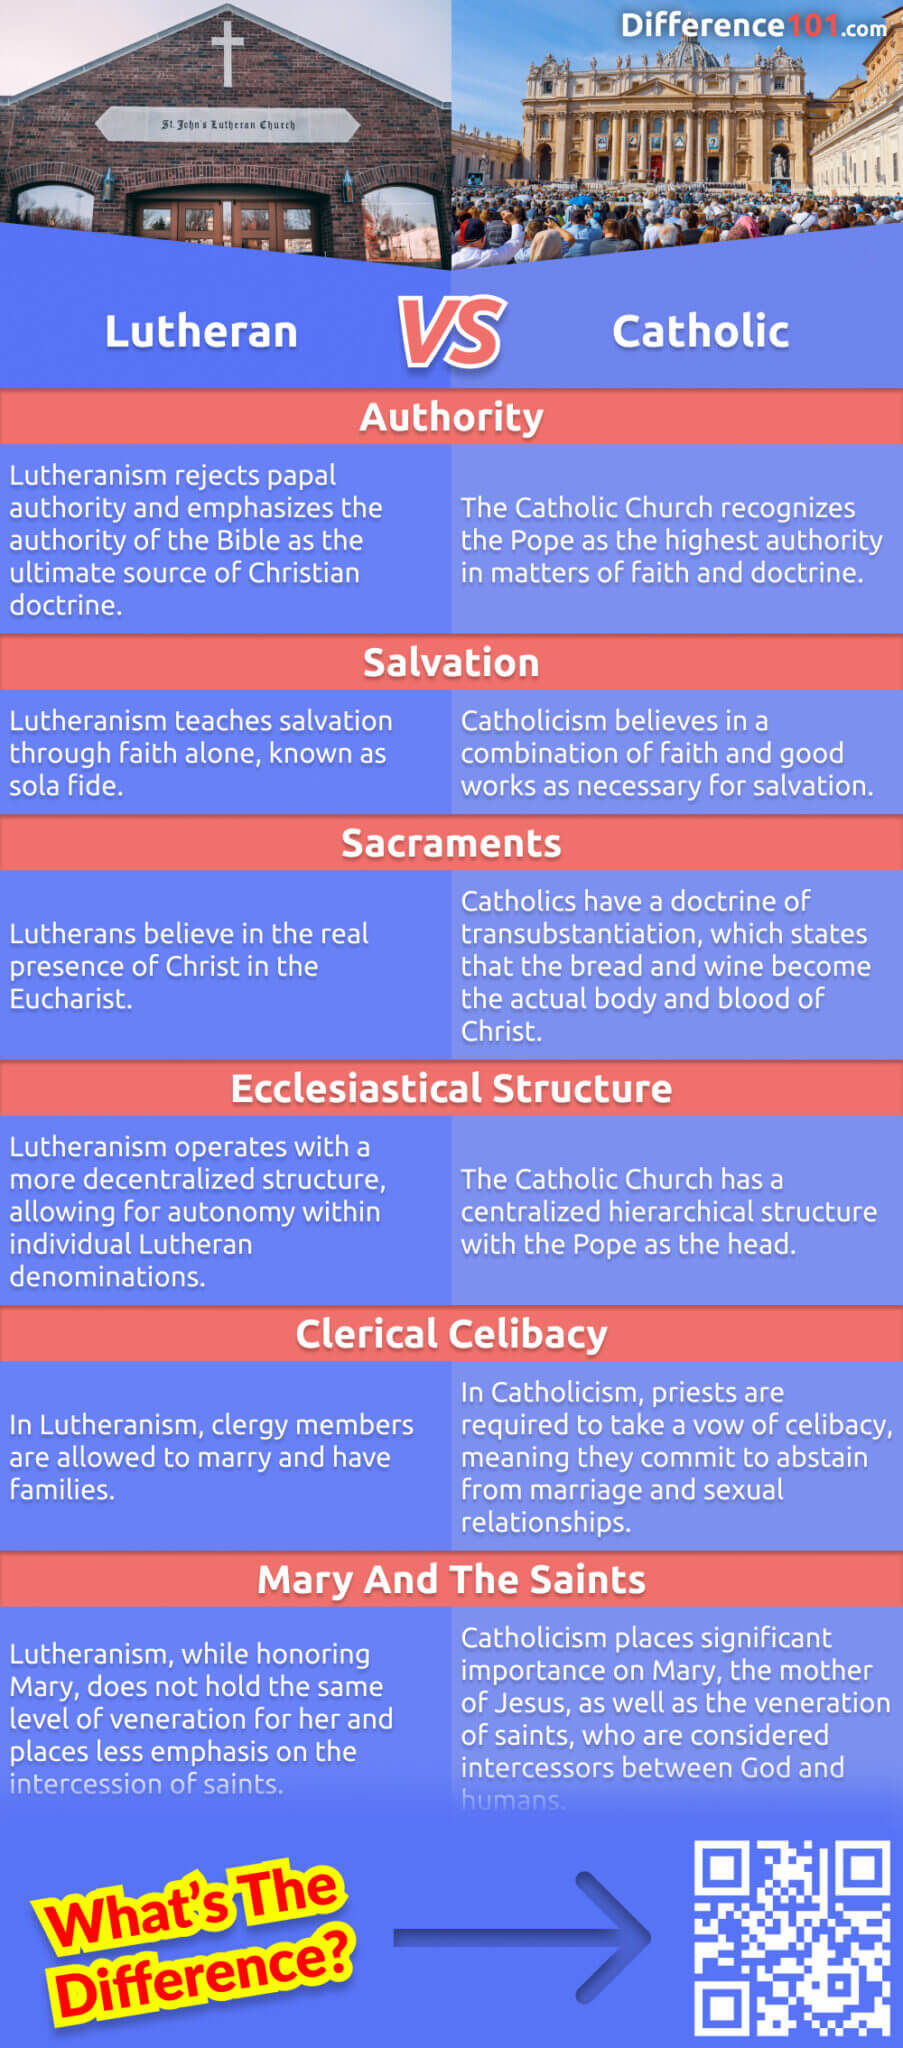 Suchen Sie einen religiösen Vergleich zwischen Lutheranern und Katholiken? In diesem Artikel werden die wichtigsten Unterschiede zwischen den beiden Konfessionen erörtert. Entdecken Sie, welche Praktiken und Überzeugungen jede Gruppe vertritt, und erfahren Sie mehr über ihre Geschichte.